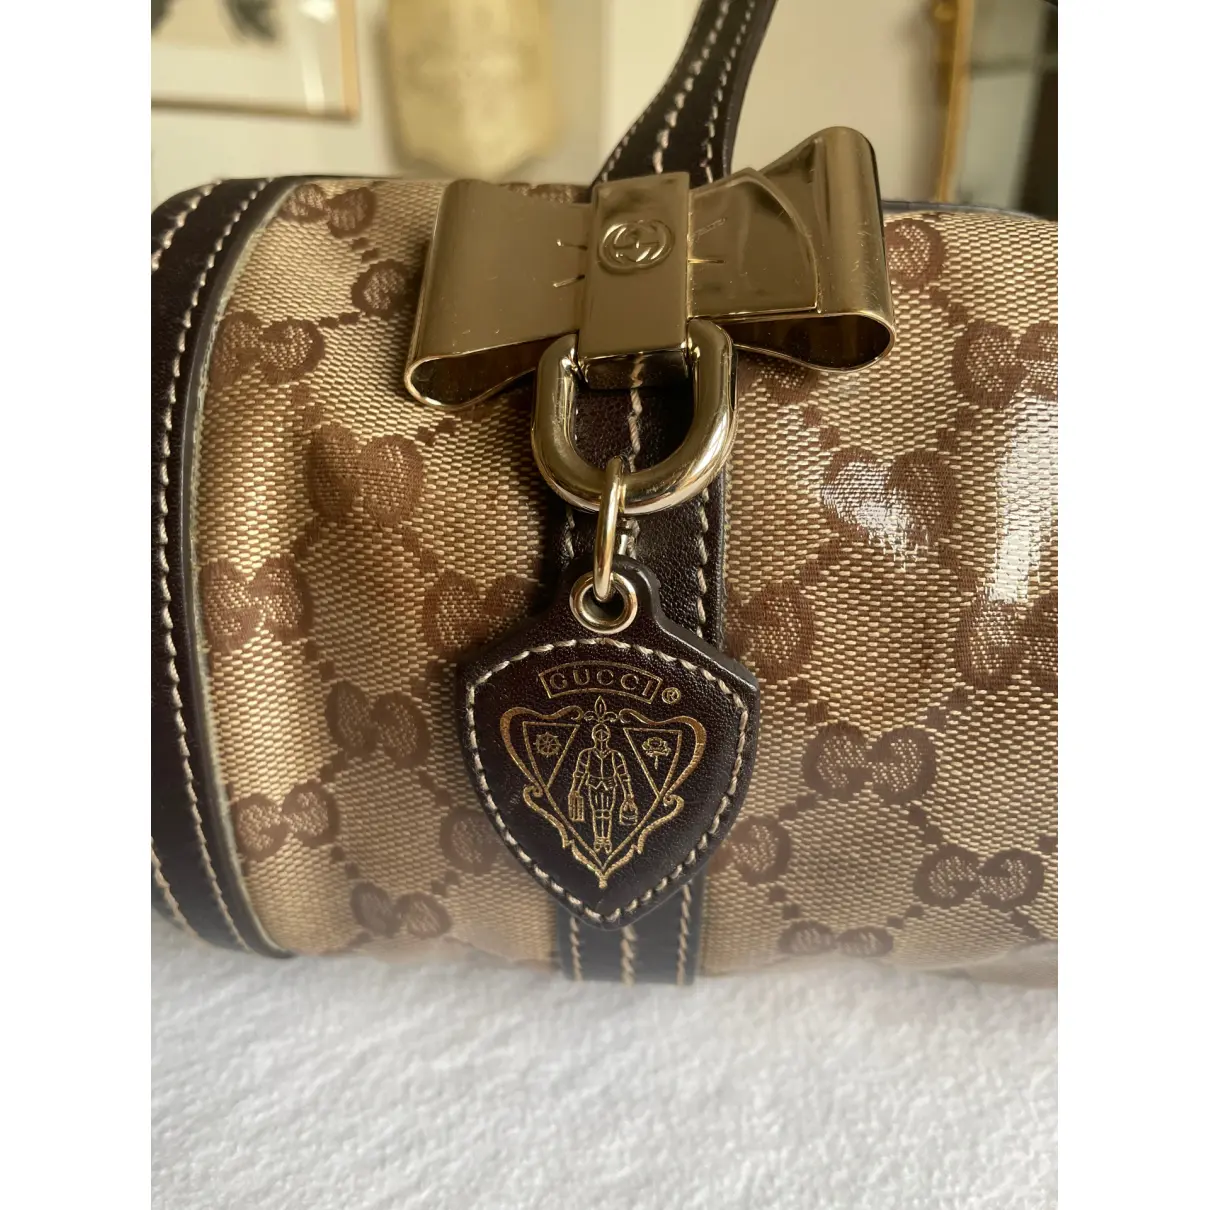 Buy Gucci Princy handbag online - Vintage